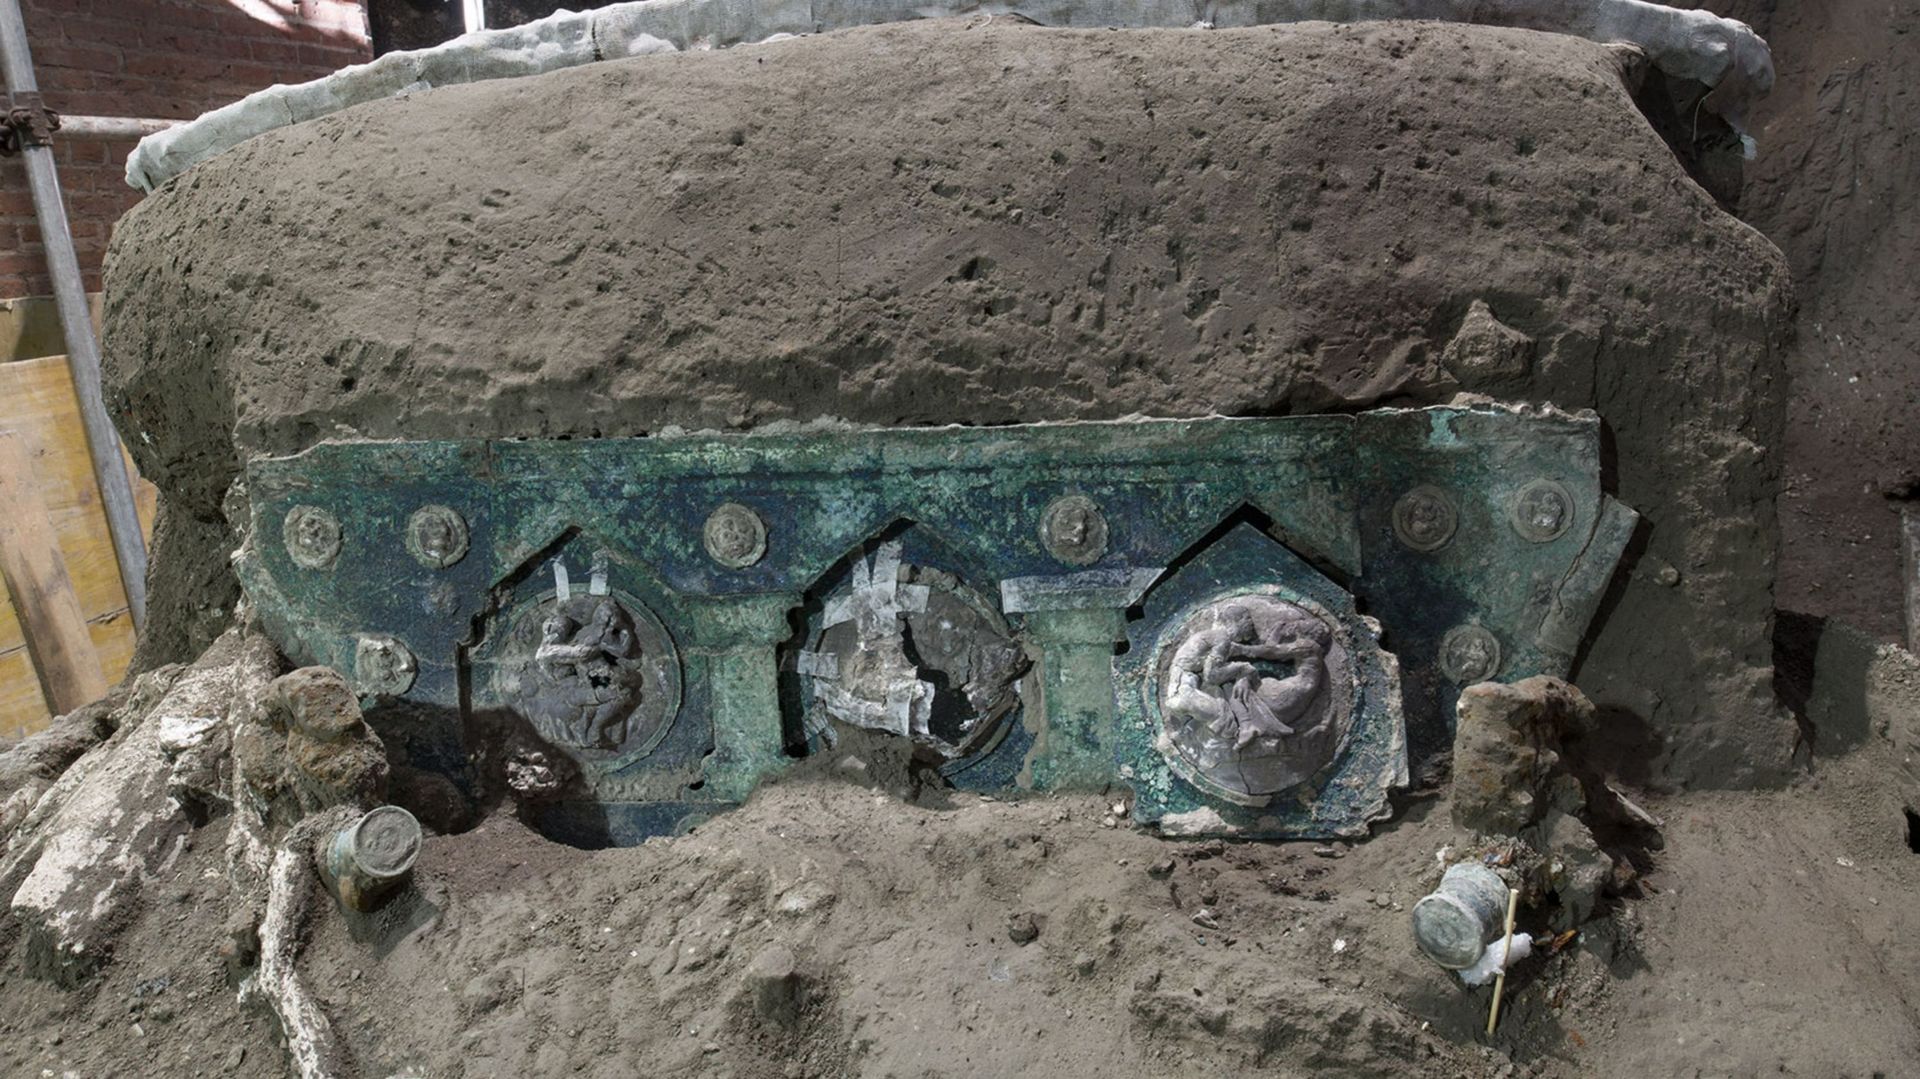 Un char de cérémonie de l’époque romaine retrouvé près de Pompéi, "une découverte extraordinaire"